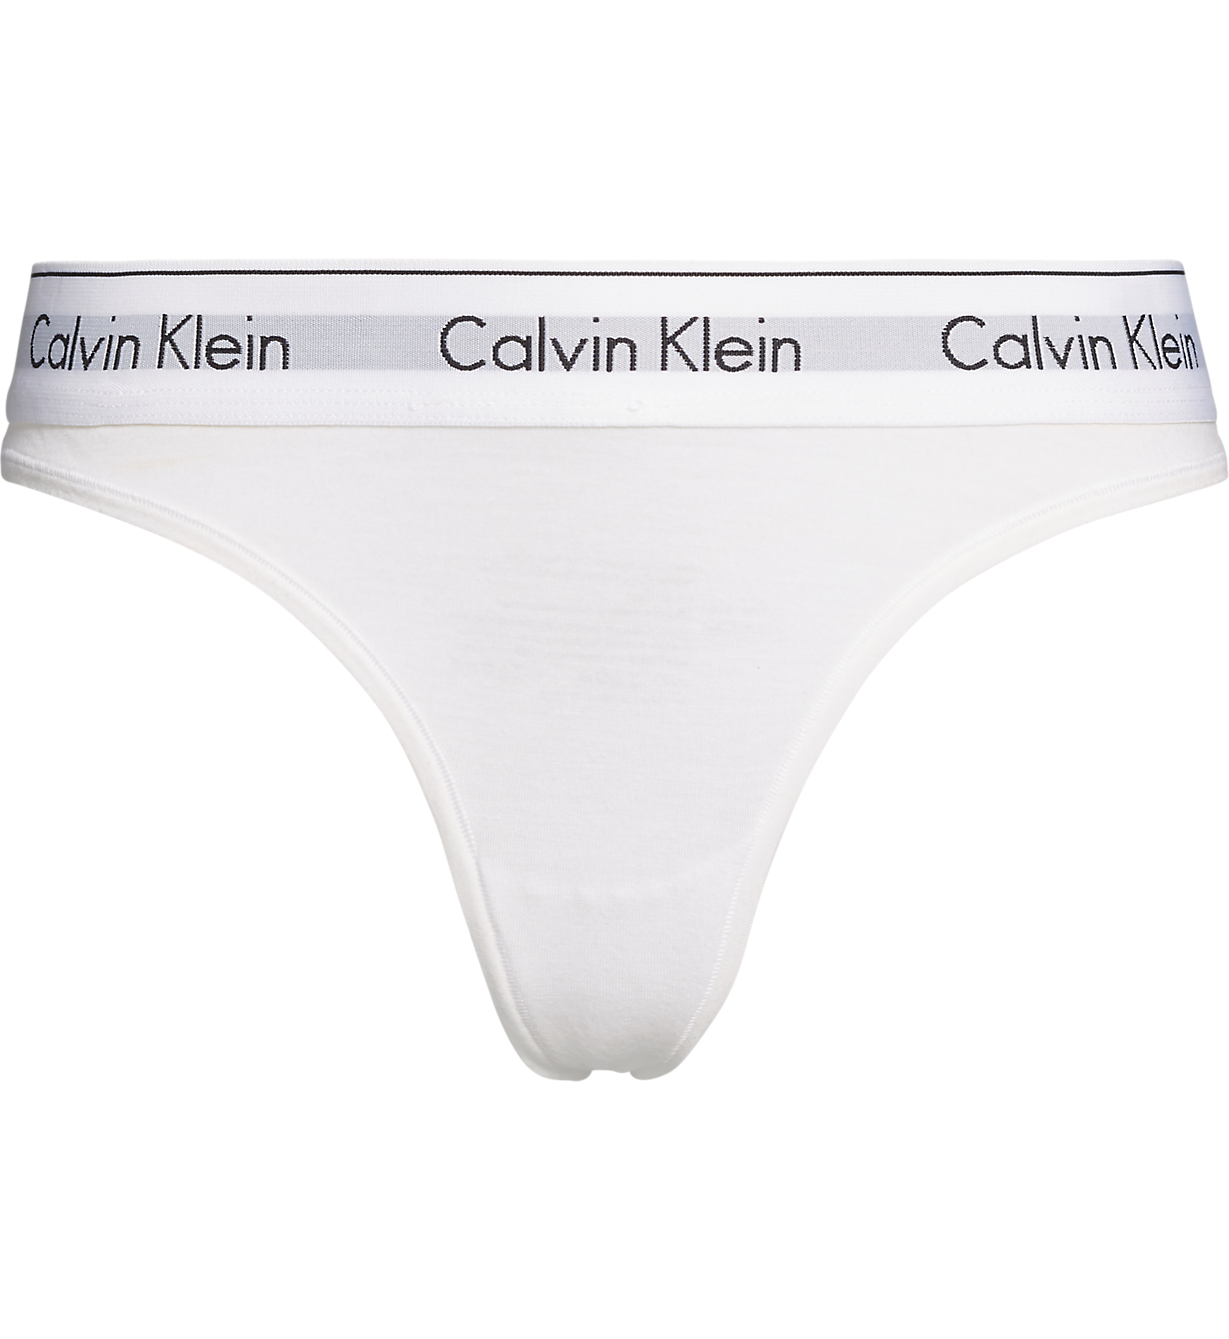 Calvin Klein dames Modern Cotton wit Shop de nieuwste voorjaarsmode